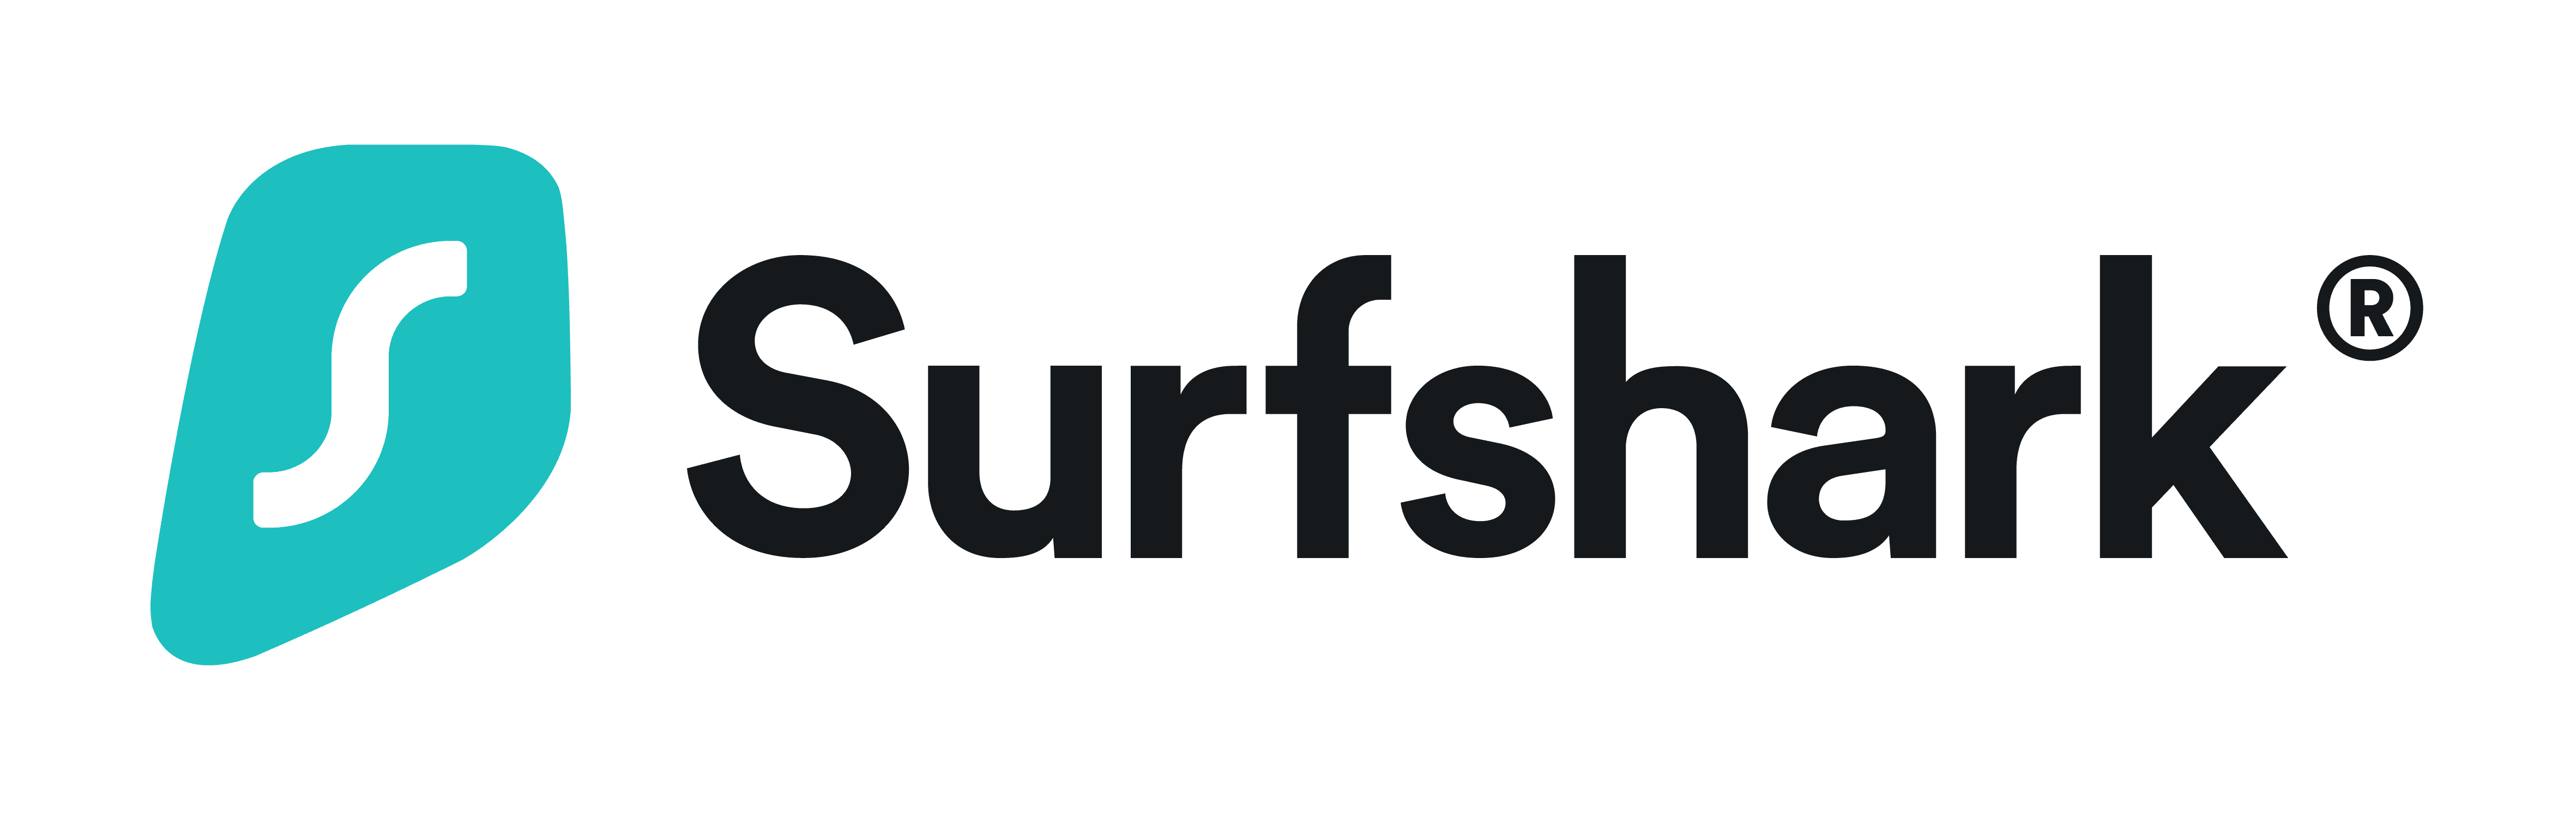 Surshark_Logo